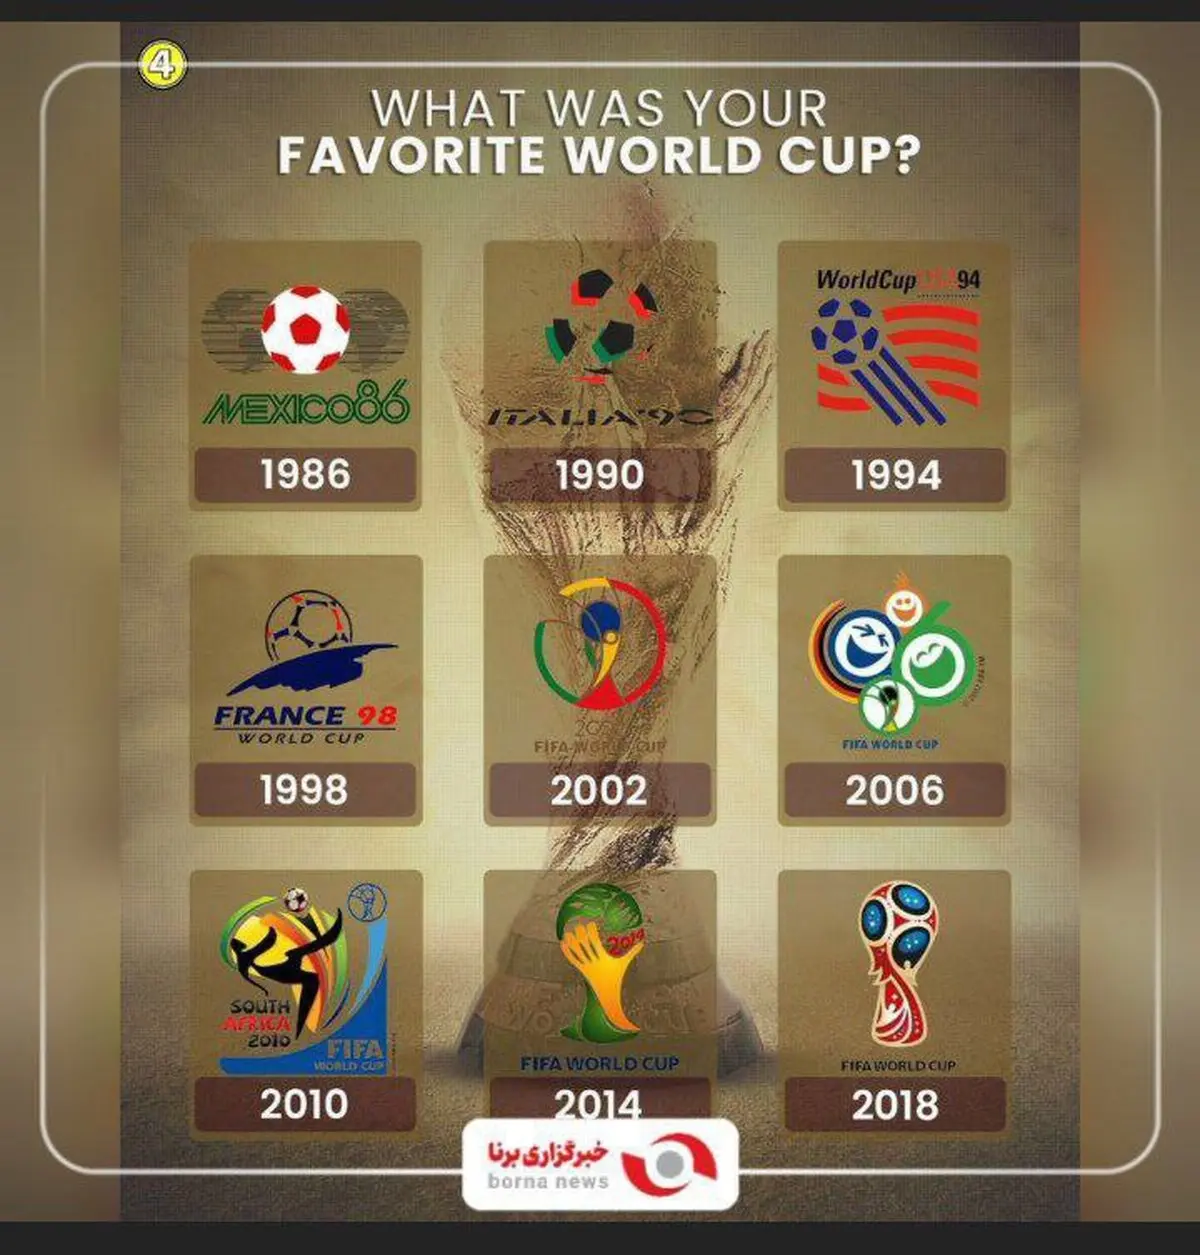 لوگوهای ٩ دوره اخیر جام جهانی